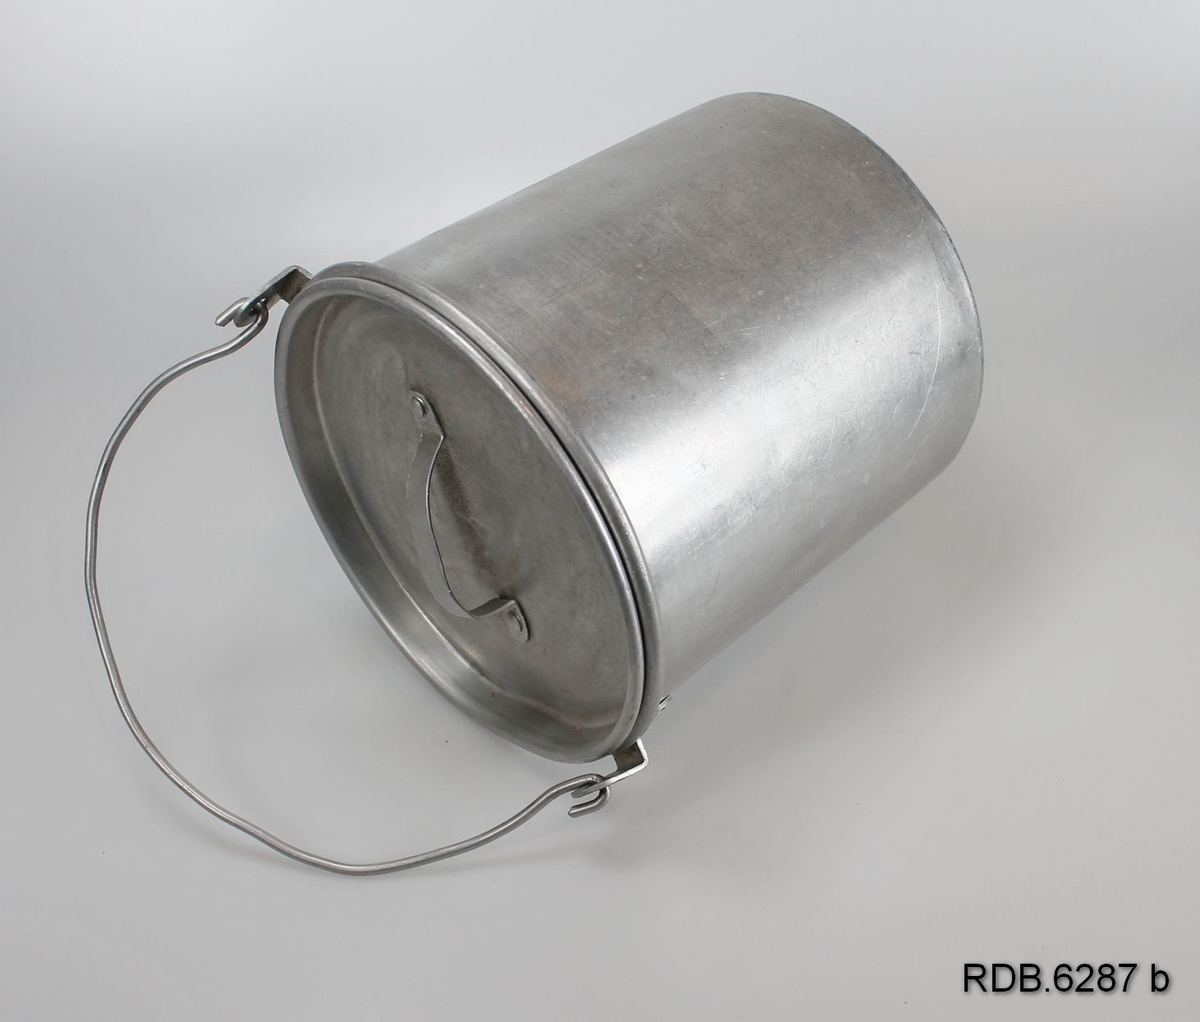 Et sølvfarget, sylindrisk 1-liters aluminiumsspann med hengslet hank og løst lokk med håndtak.